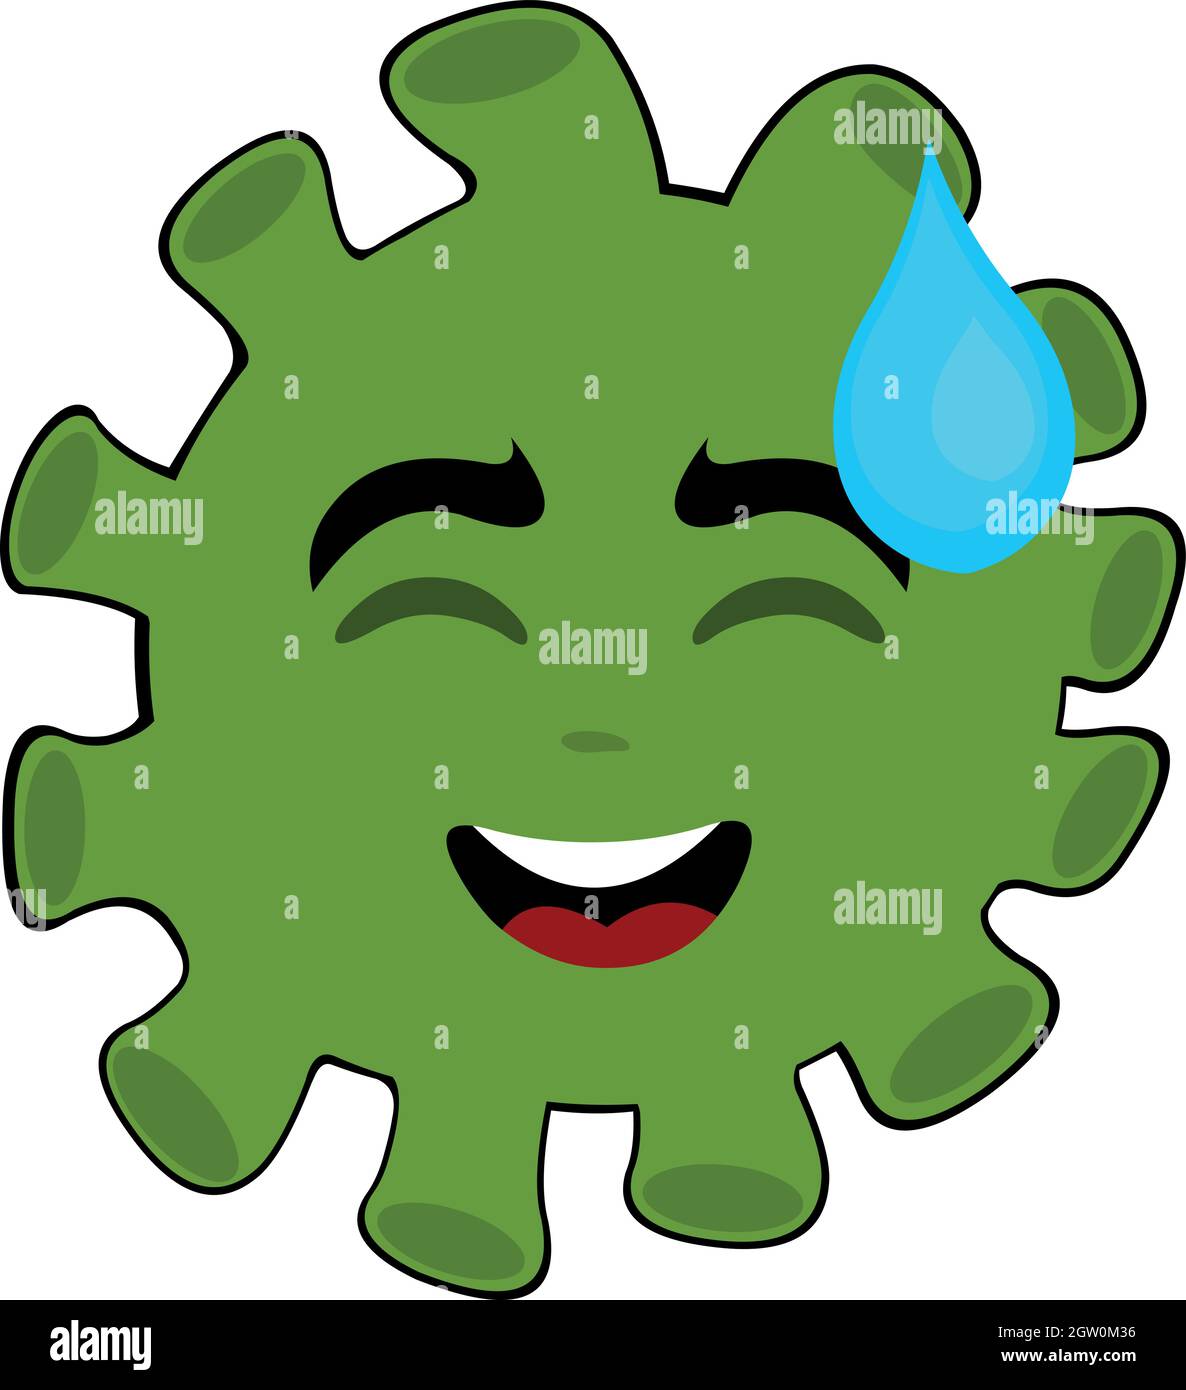 Vektor-Illustration von Cartoon-Mikrobe, Virus oder Bakterien Emoticon, mit einem schändlichen Ausdruck und ein Tropfen Schweiß fallen von seinem Kopf Stock Vektor